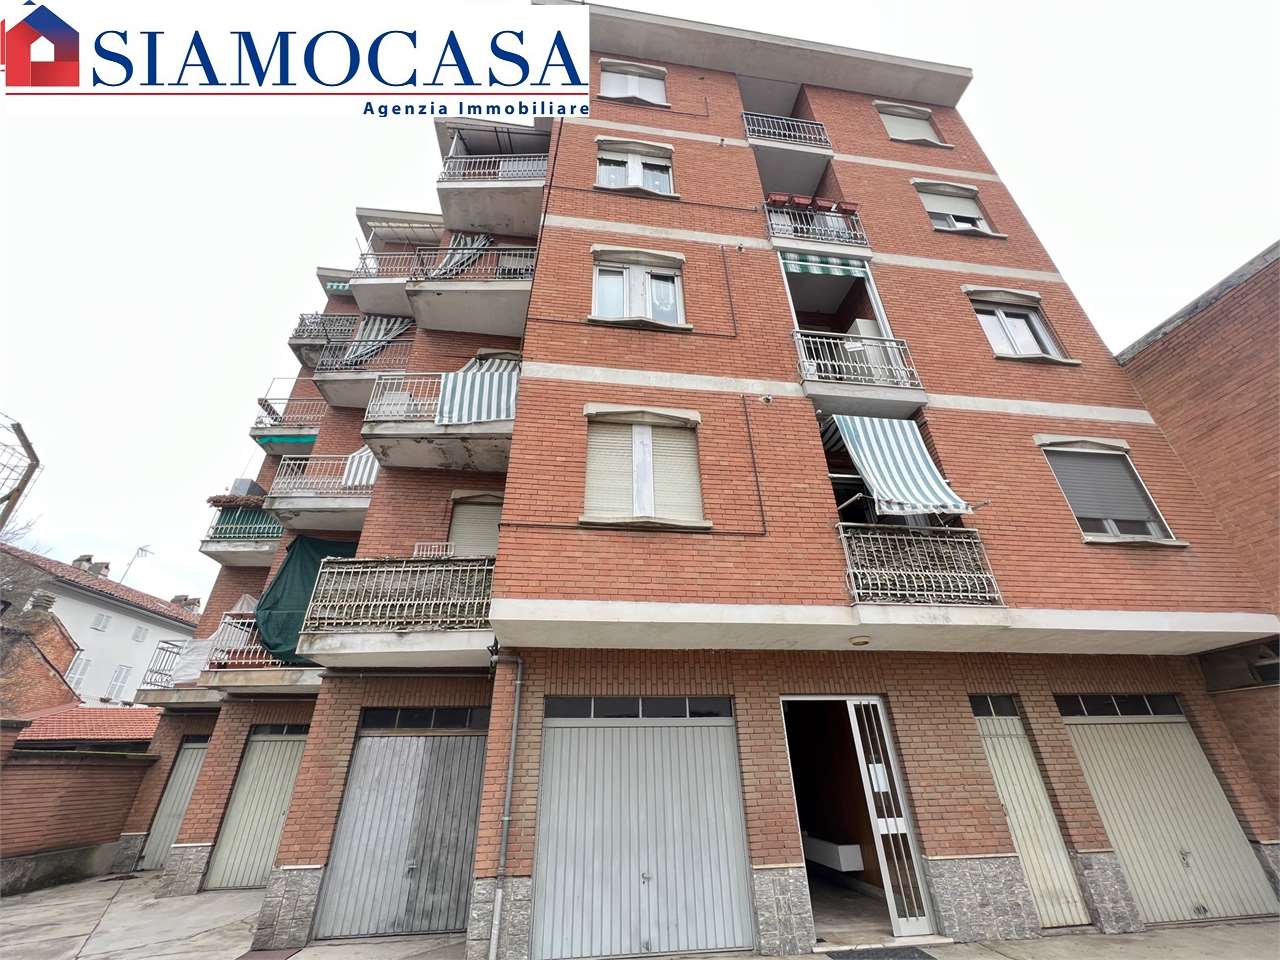 Appartamento in vendita a Quargnento, 3 locali, prezzo € 65.000 | CambioCasa.it